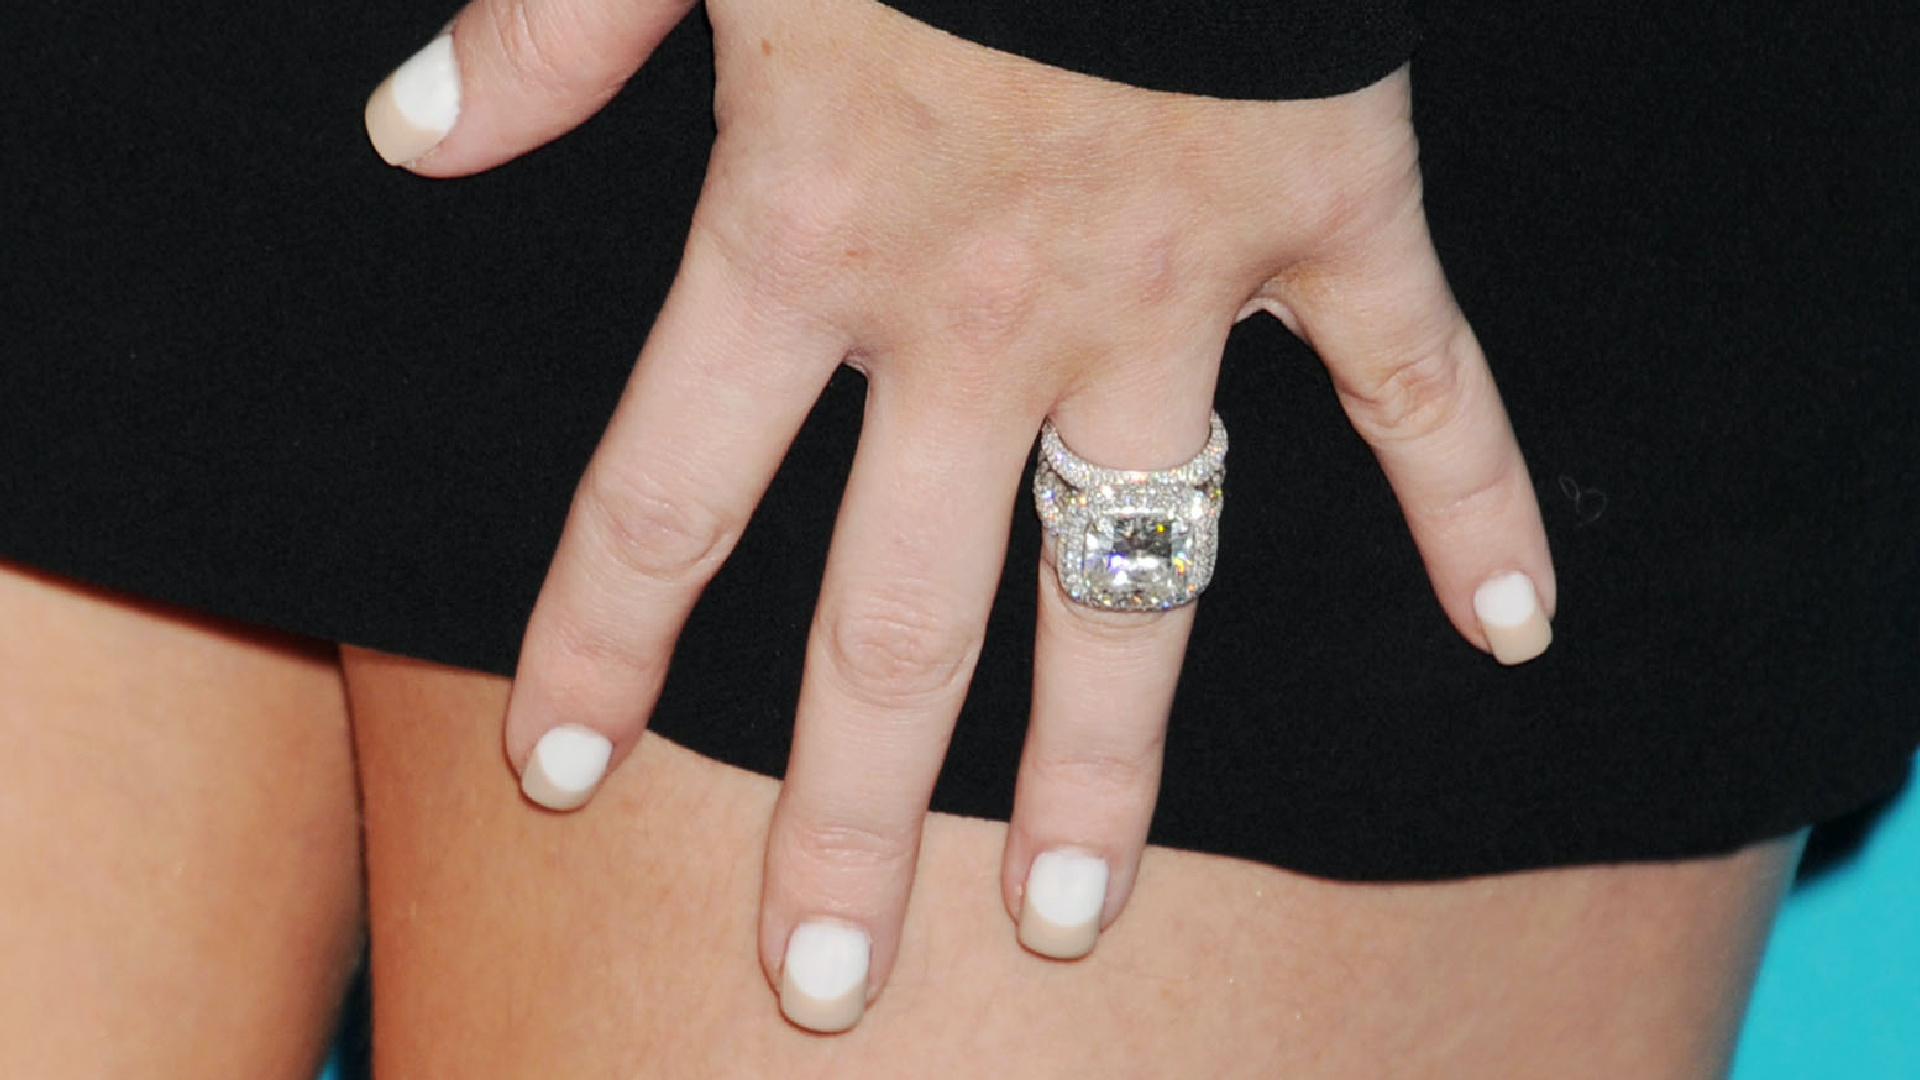 <p>Se estima que el anillo de Khloe Kardashian costó en torno a 850,000 dólares. Eso sí, una minucia si lo comparamos con el nuevo anillo que recibió de Tristan Thompson a principios de este año. Este último cuenta con una enorme piedra central en forma de pera, con dos diamantes de quilates más pequeños a cada lado que ha sido valorado en aproximadamente 2.5 millones de dólares.</p>